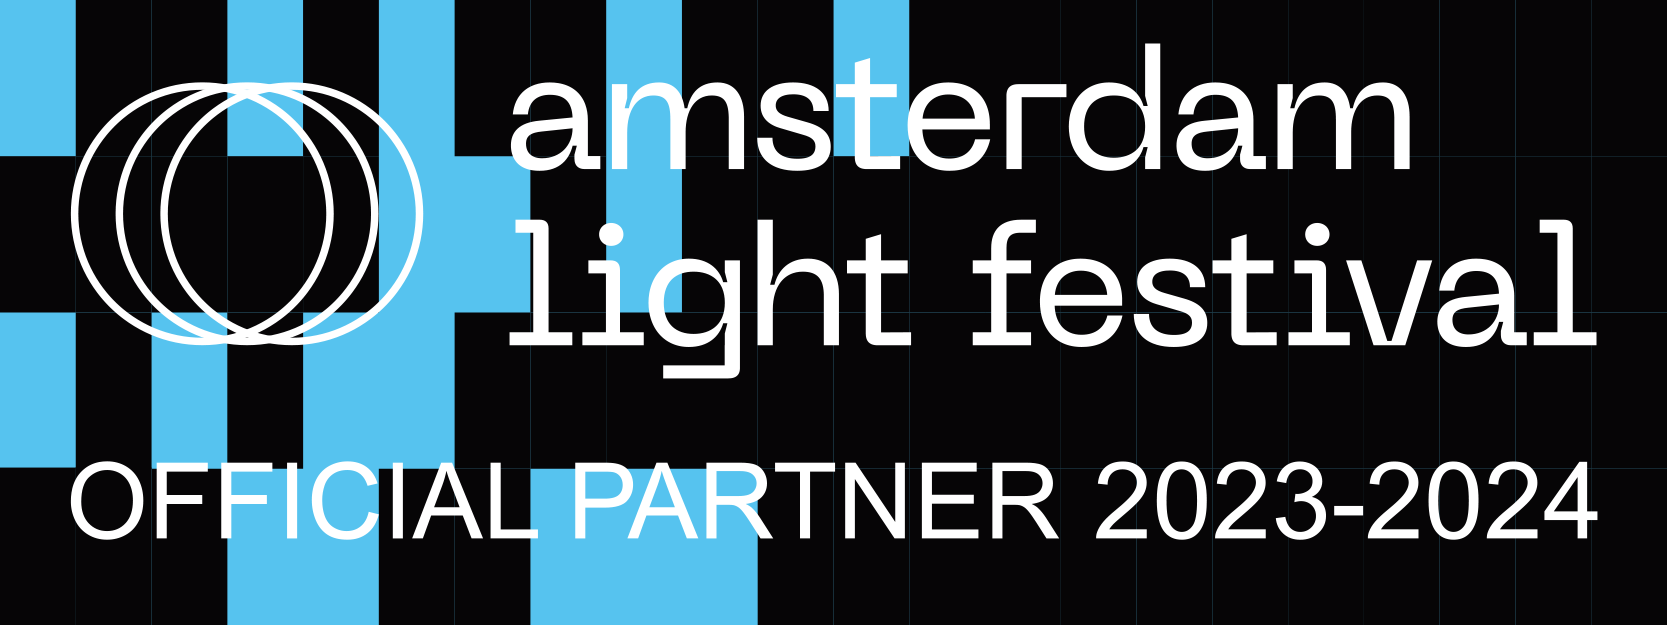 official partner light festival amsterdam boat tour